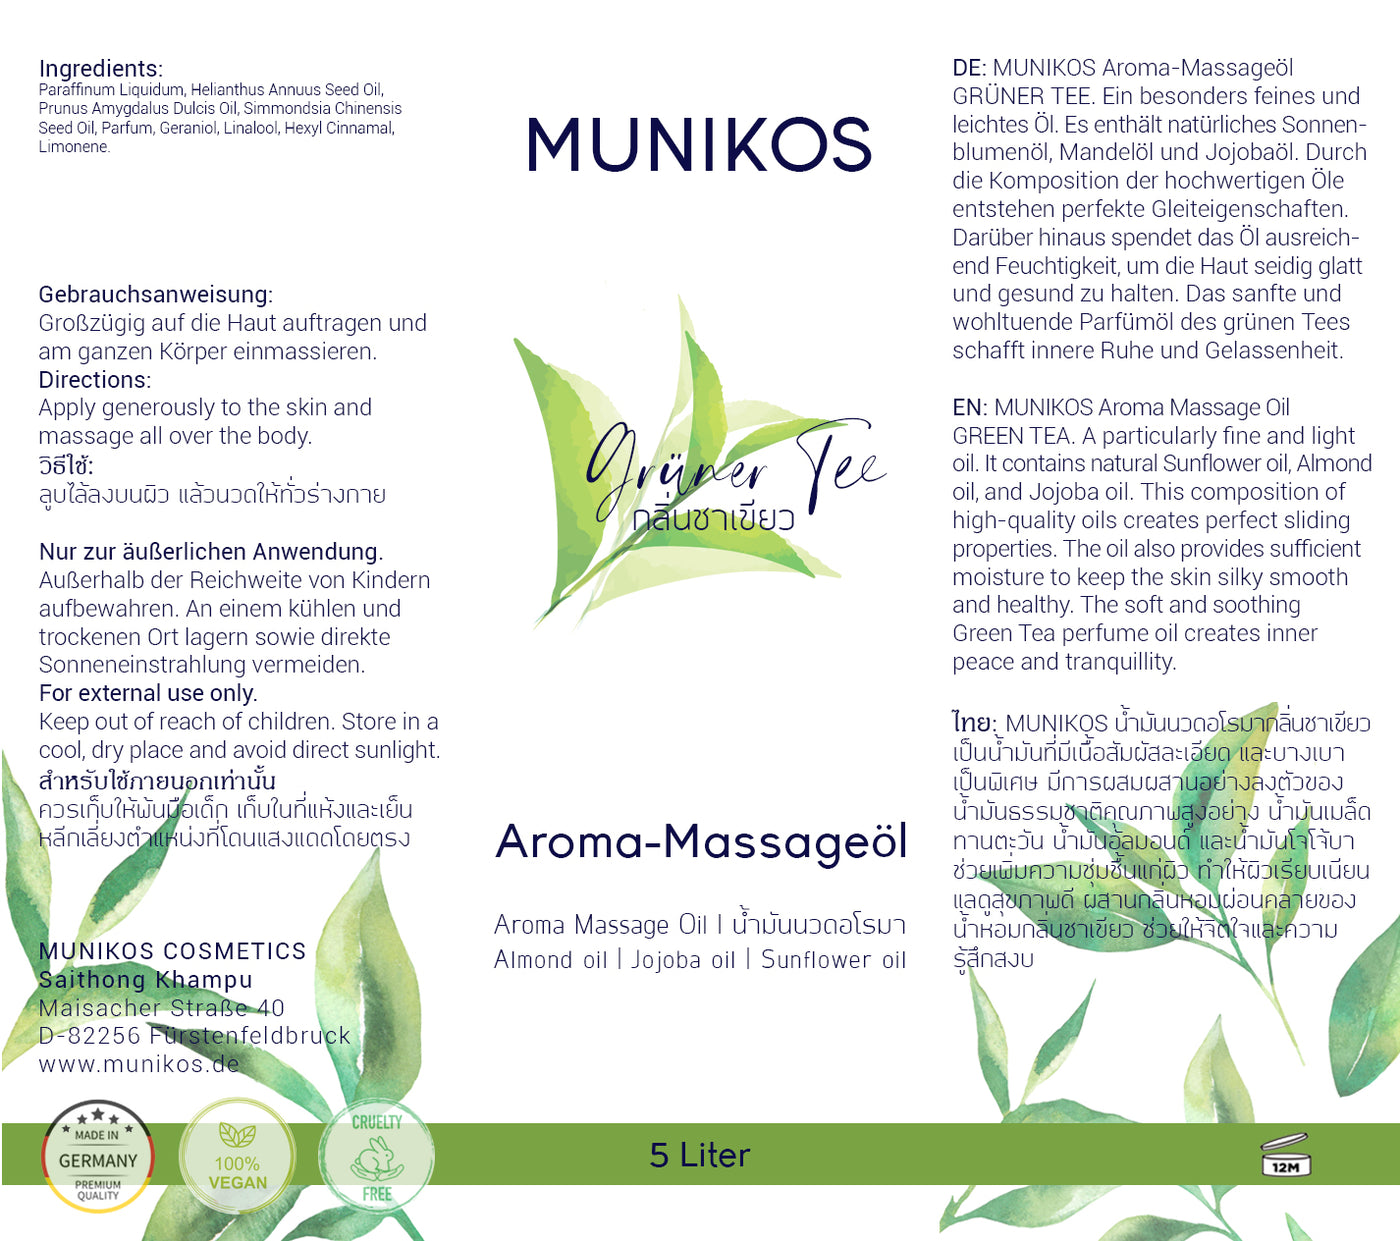 Aroma-Massageöl GRÜNER TEE